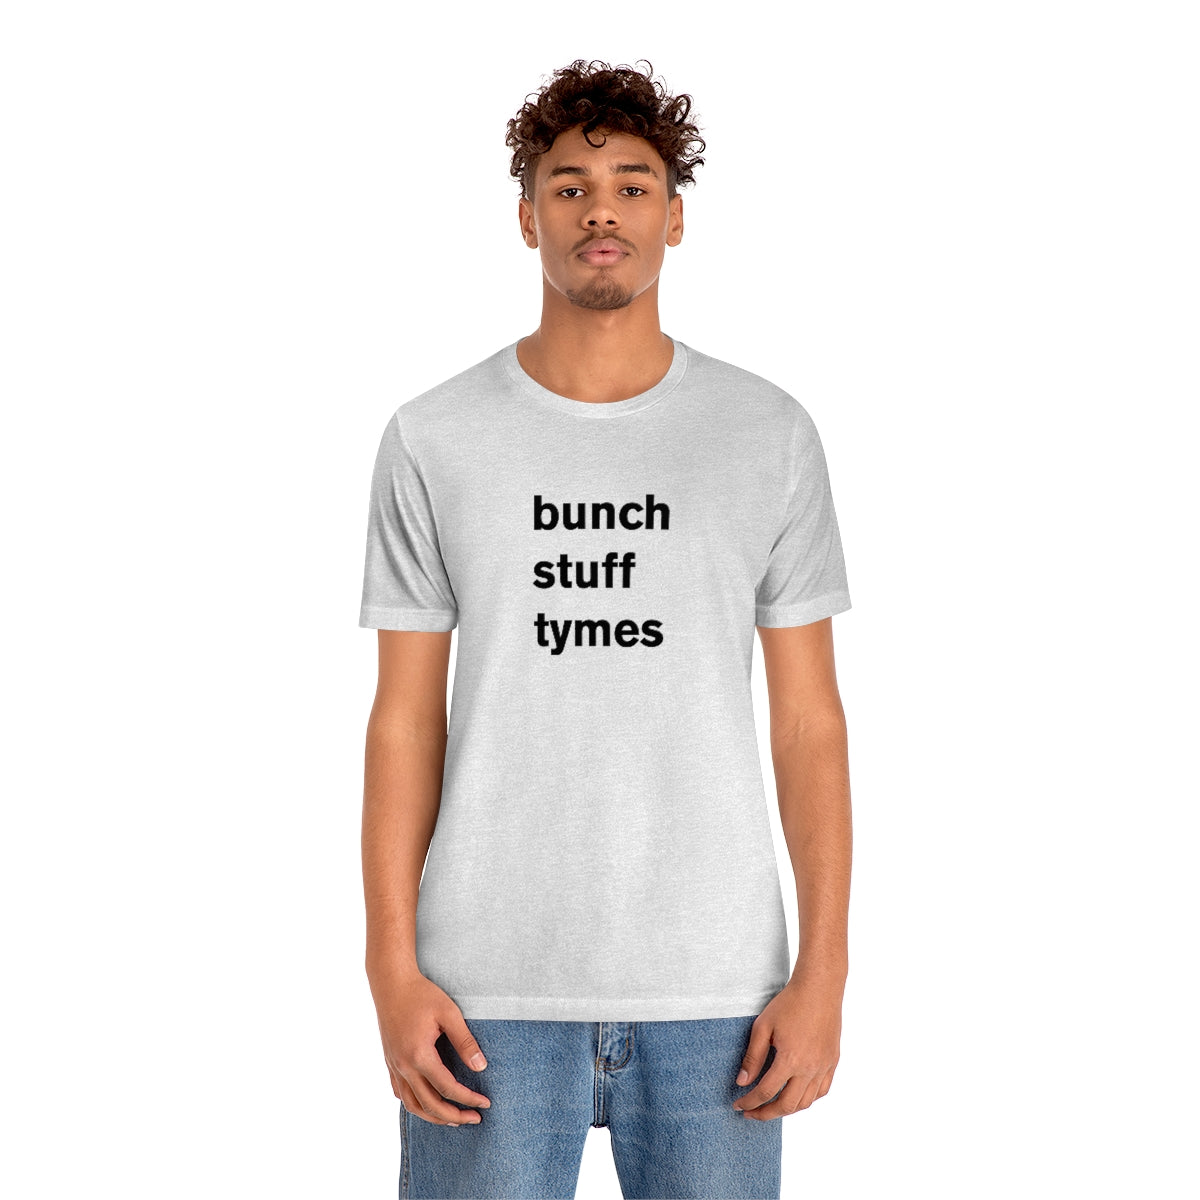 bunch stuff tymes - t-shirt